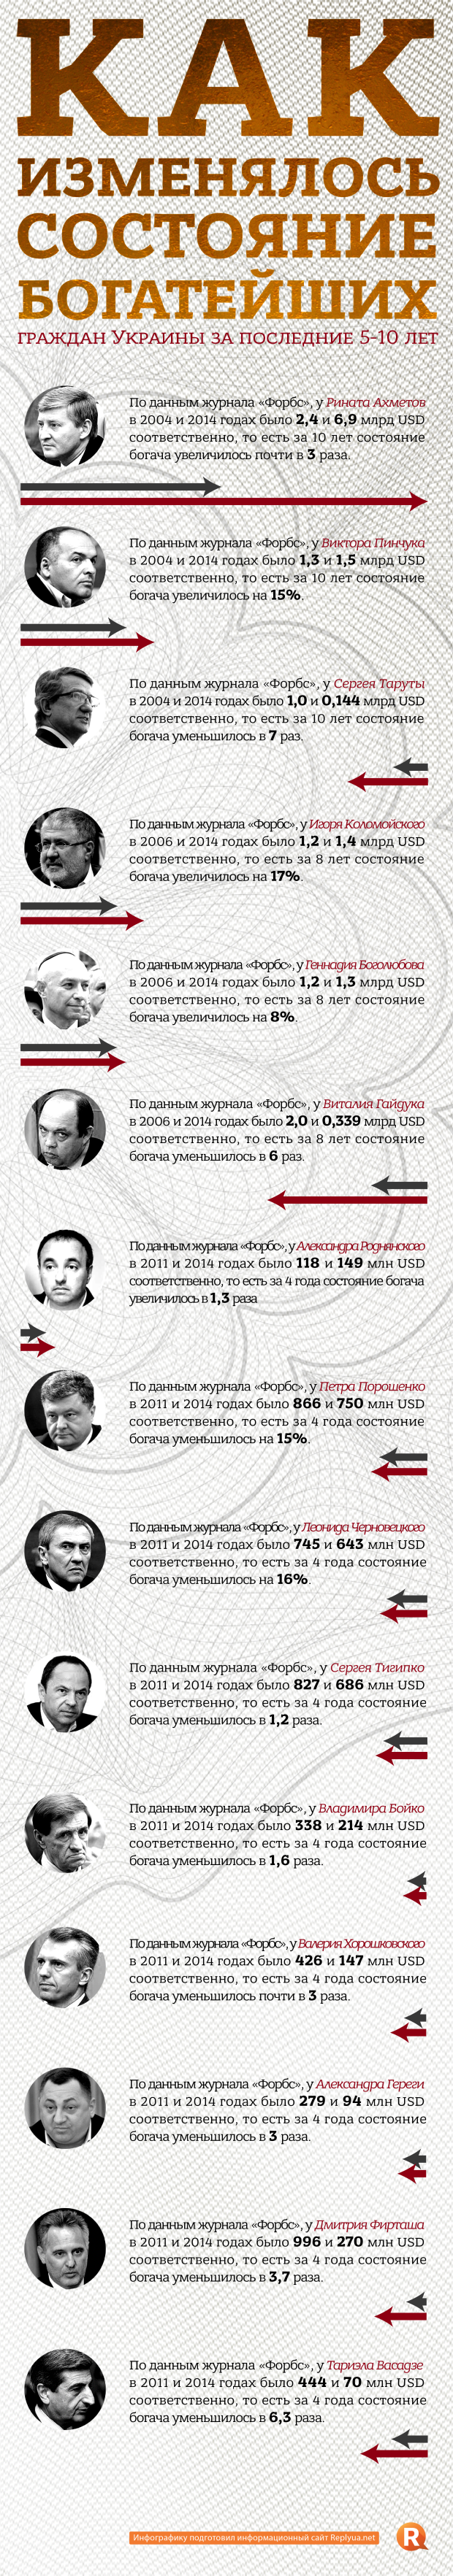 Как изменялось состояние олигархов Украины - инфографика в цифрах